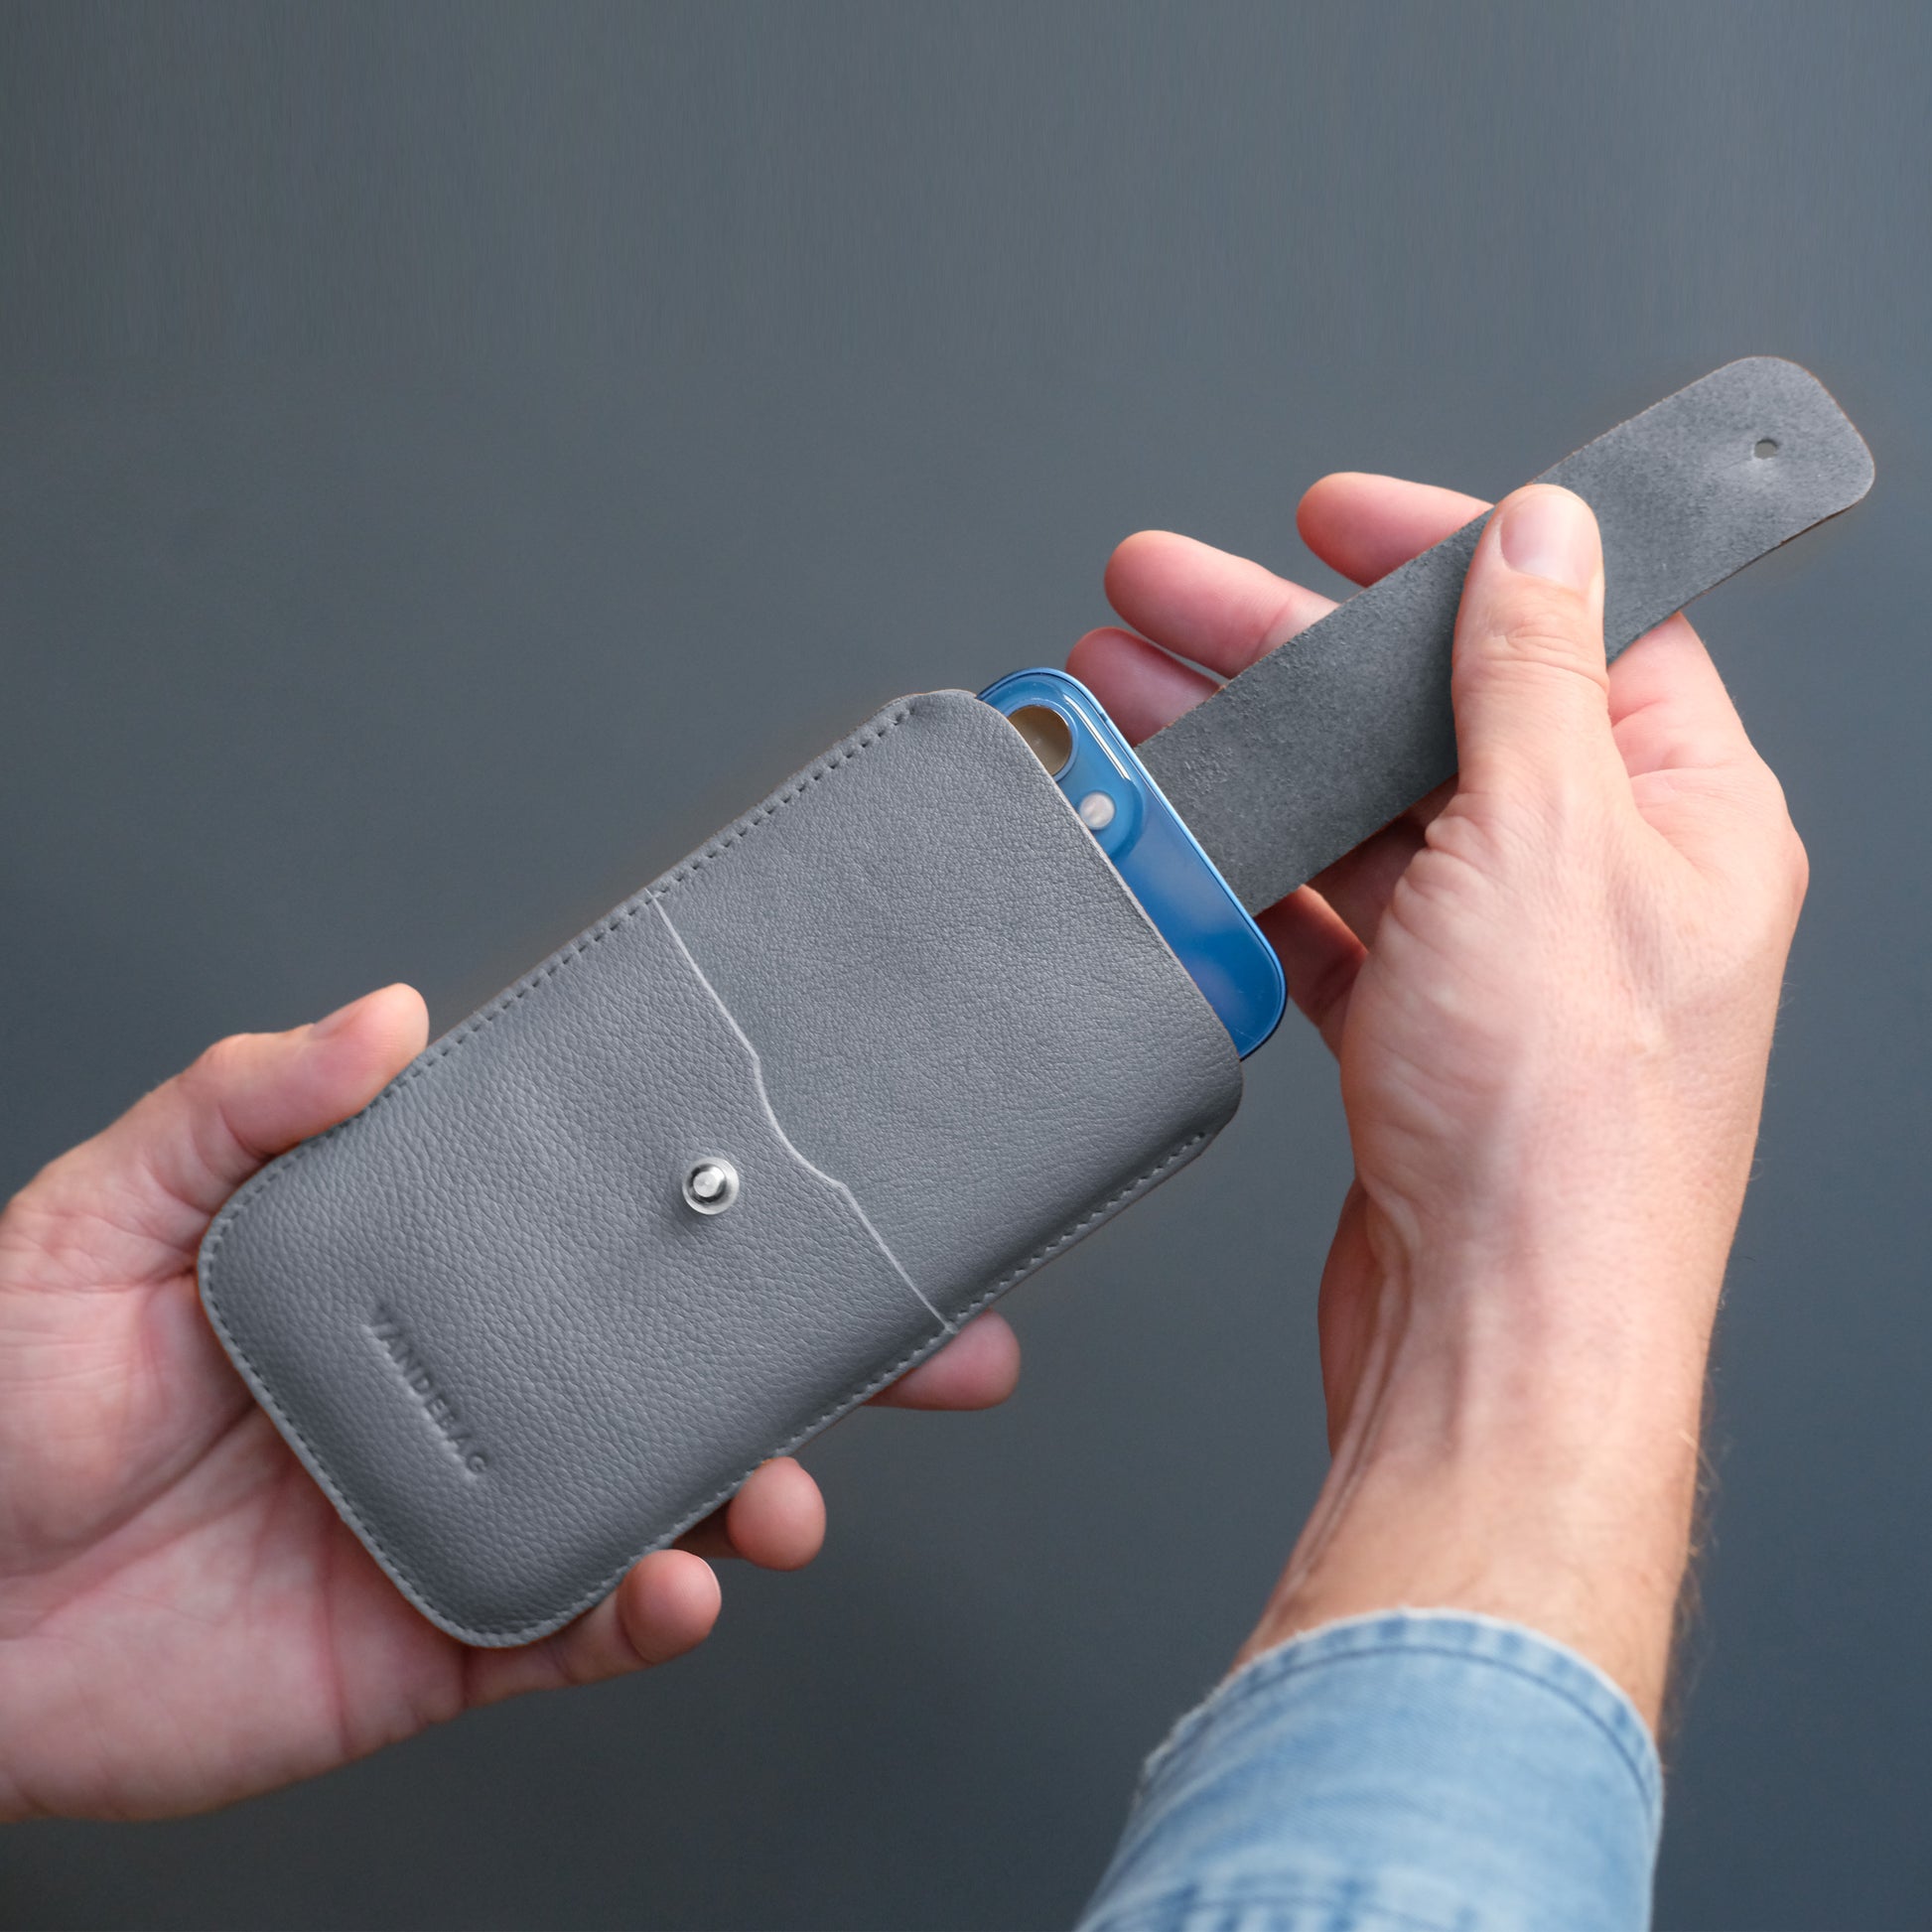 iPhone wird aus grauer Handyhülle mit Lasche gezogen